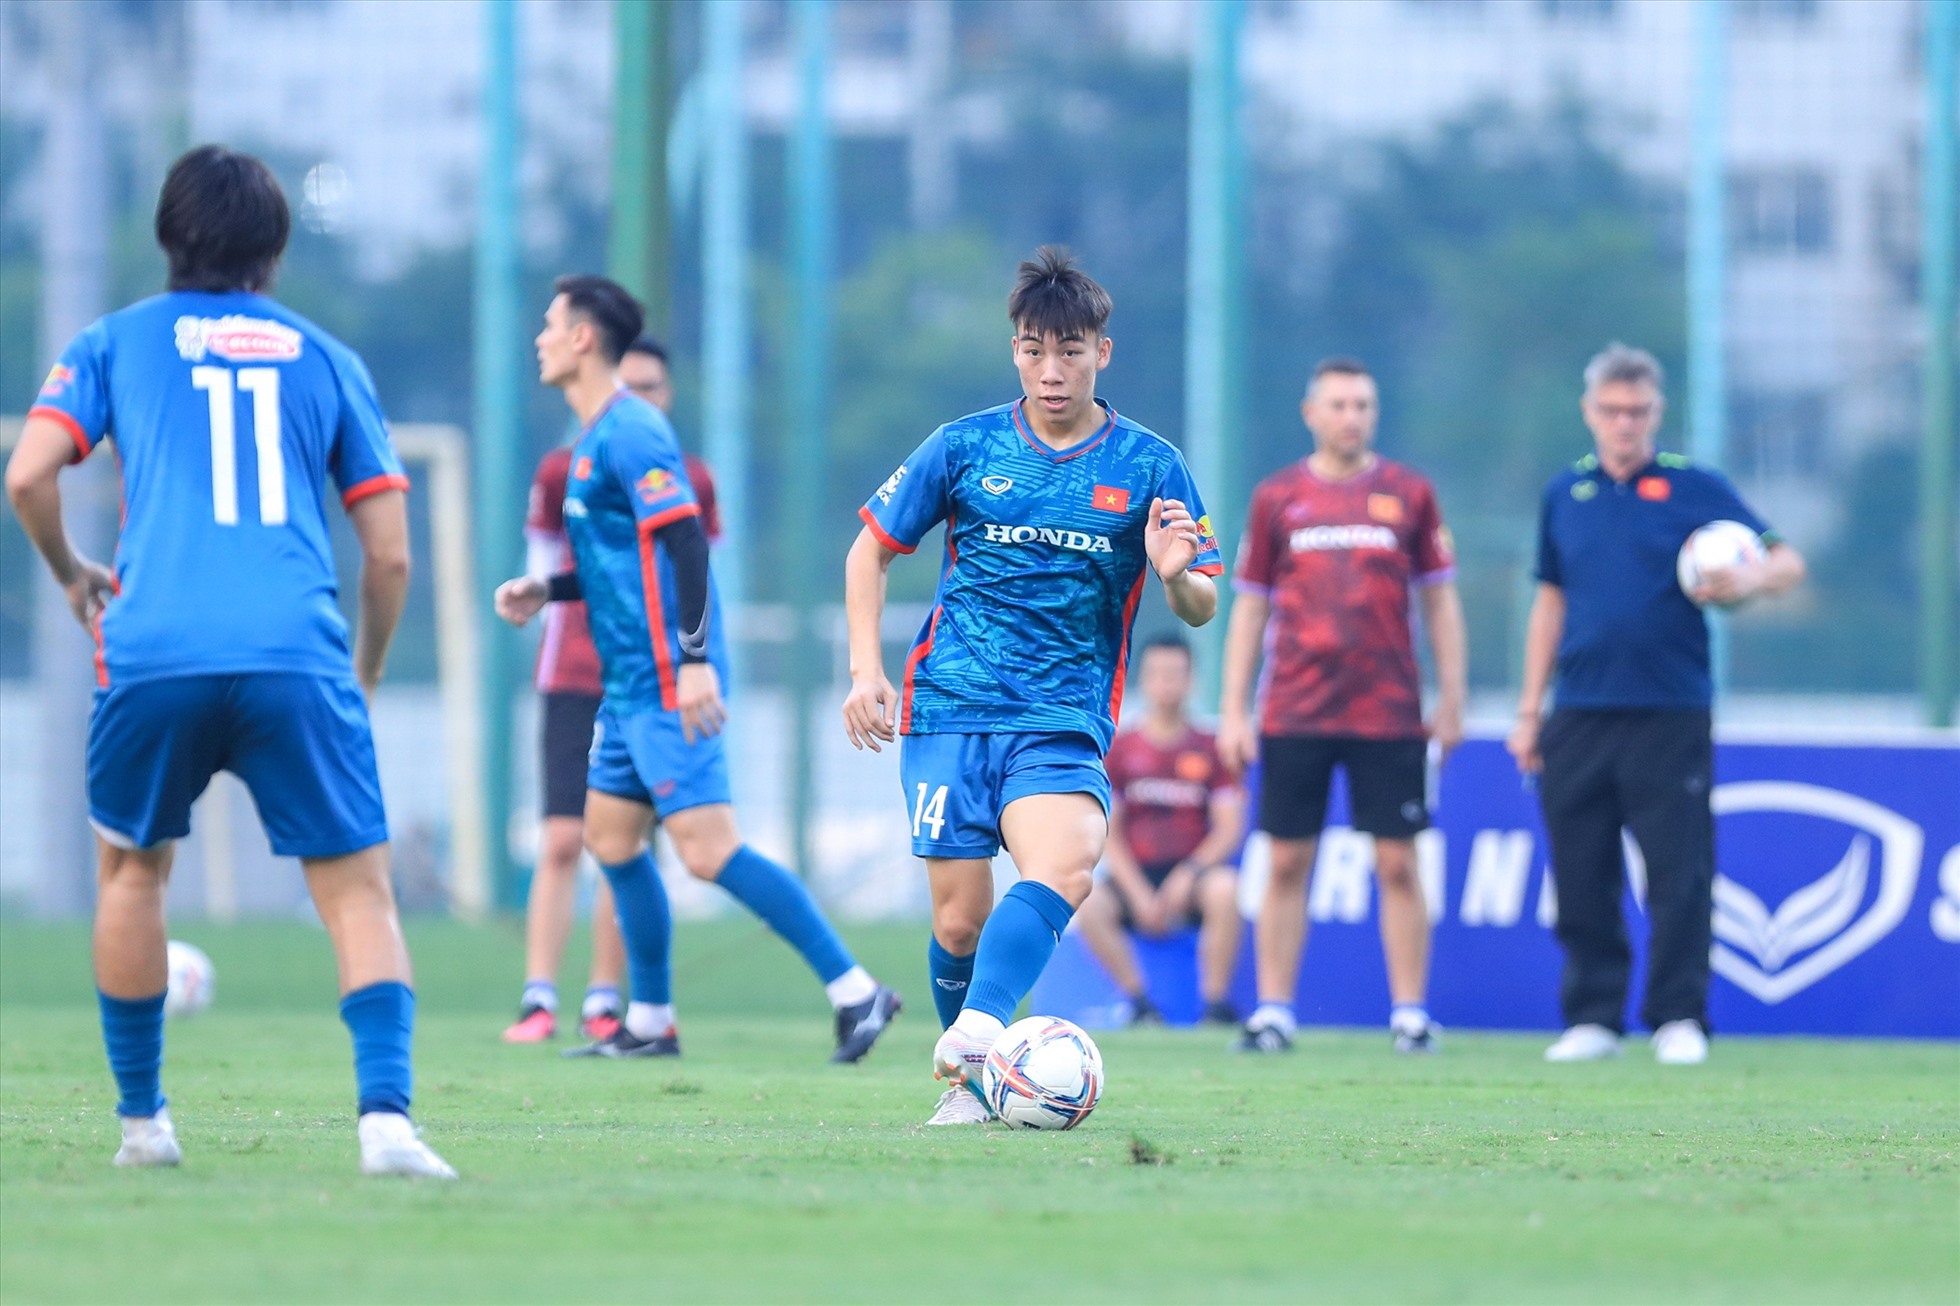 Hoàng Văn Toản - cầu thủ trẻ của Công an Hà Nội trở thành 1 trong 3 gương mặt U23 Việt Nam hiếm hoi được chọn vào nhóm chủ chốt của đội tuyển Việt Nam khi tập luyện.